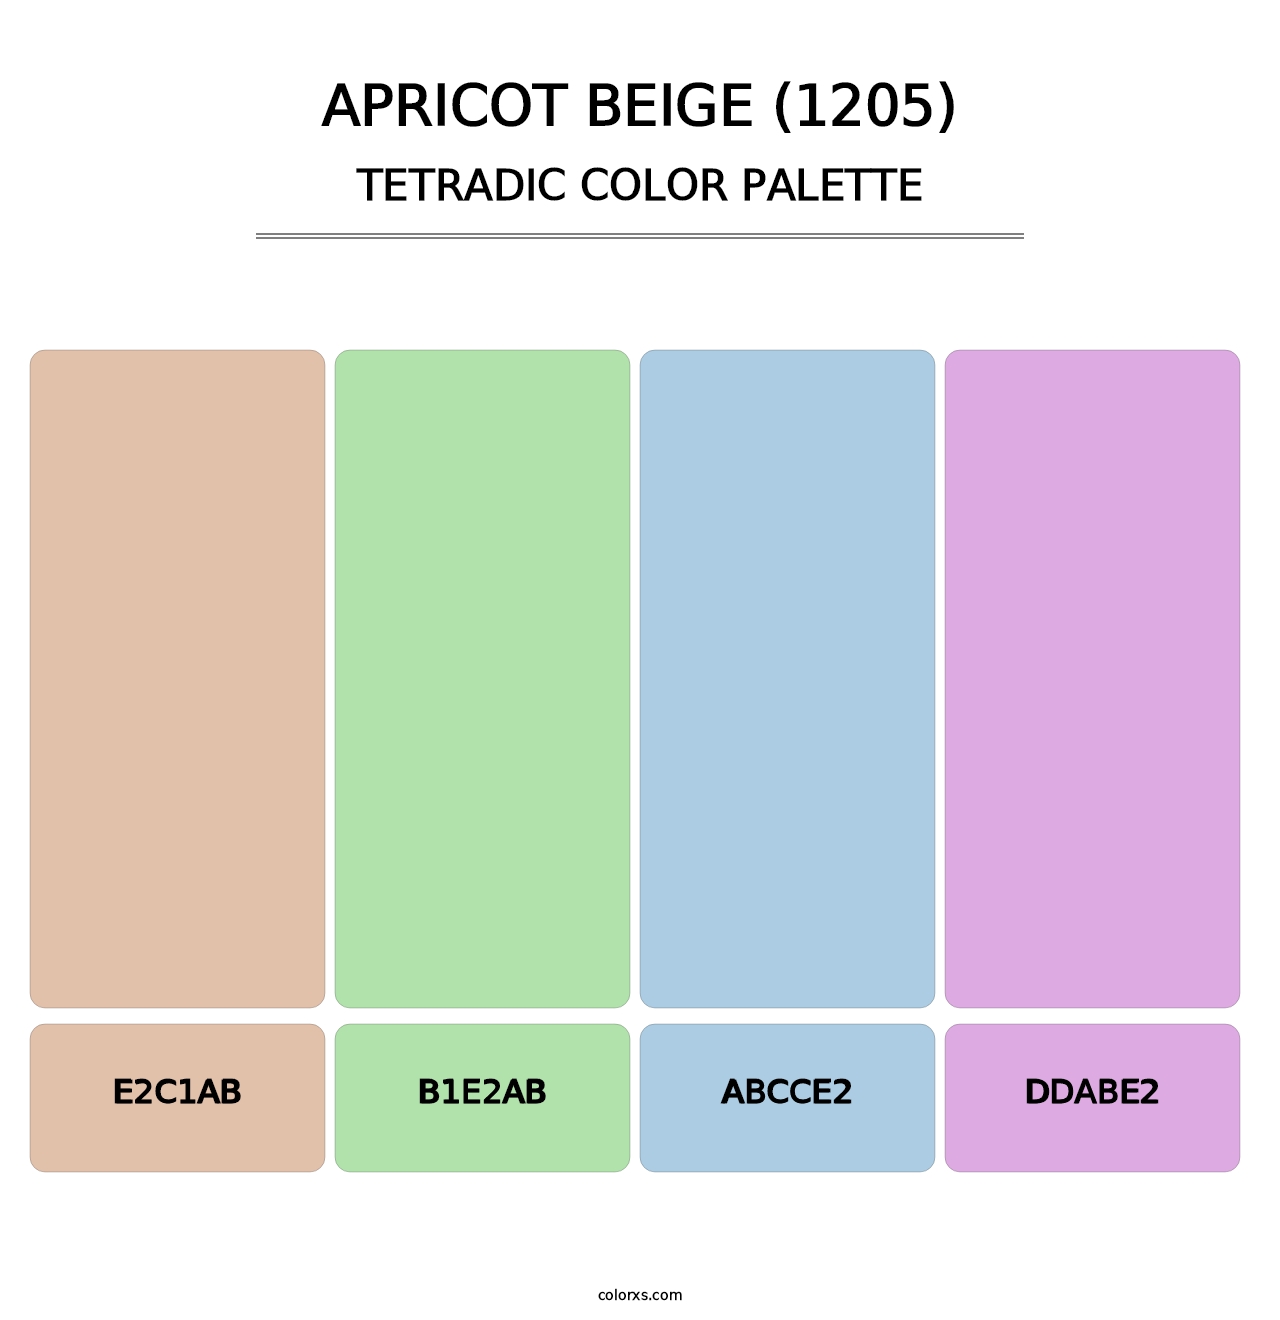 Apricot Beige (1205) - Tetradic Color Palette